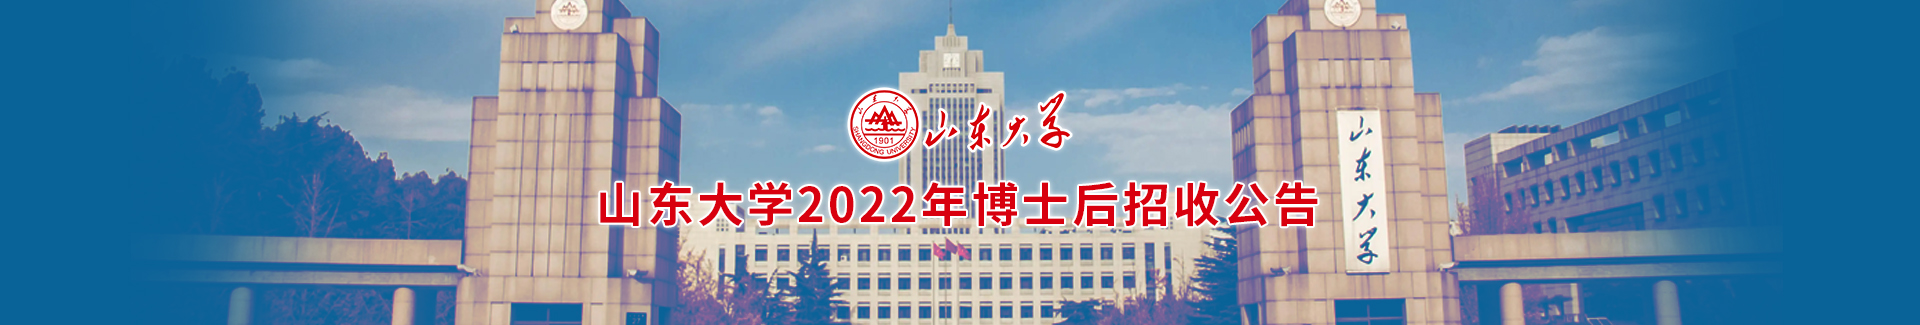 山東大學2022年博士后招收公告